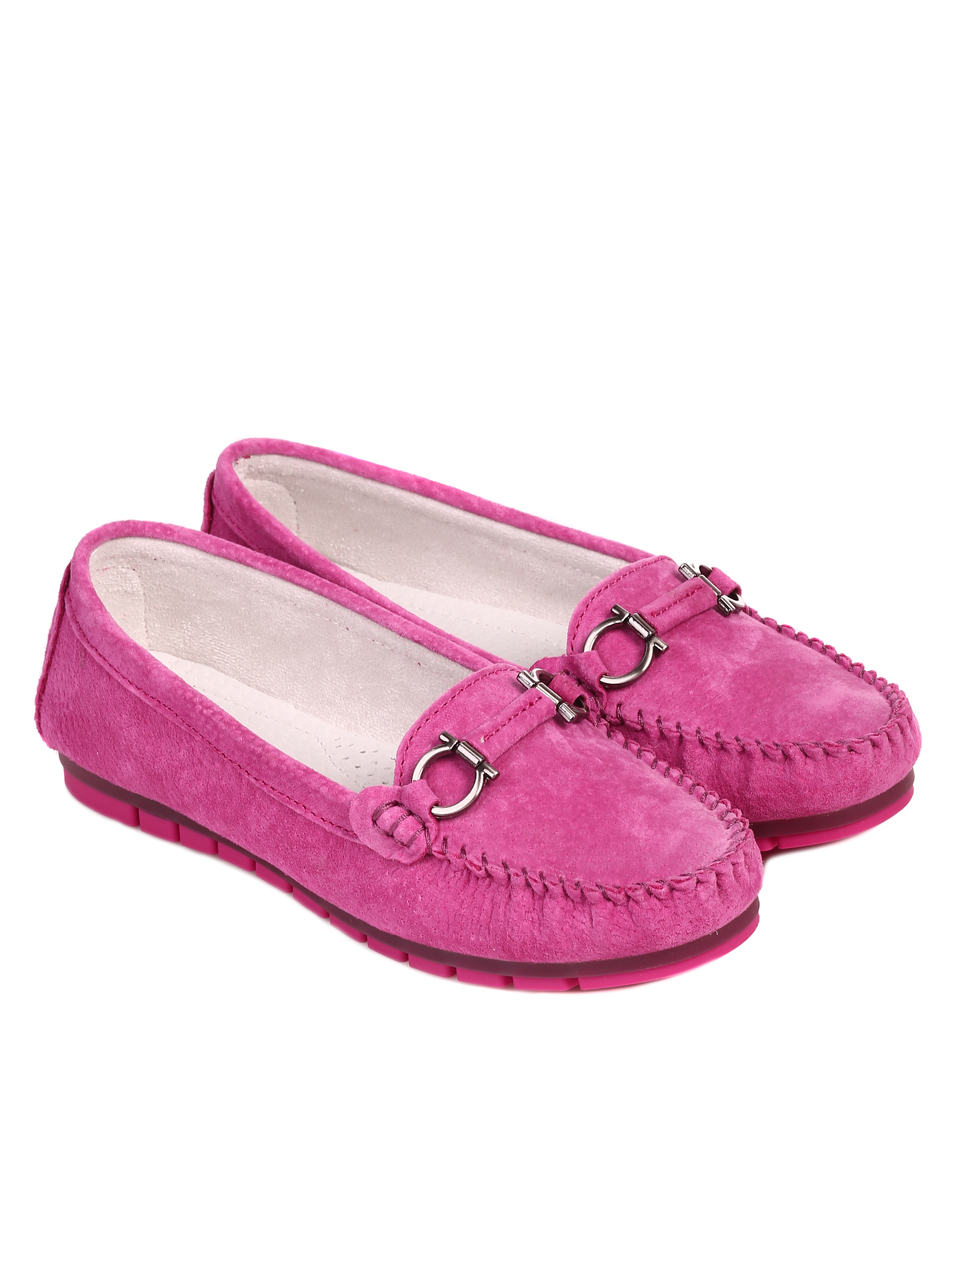 Ежедневни дамски обувки от велур в цвят фуксия 3AF-22105 fuchsia